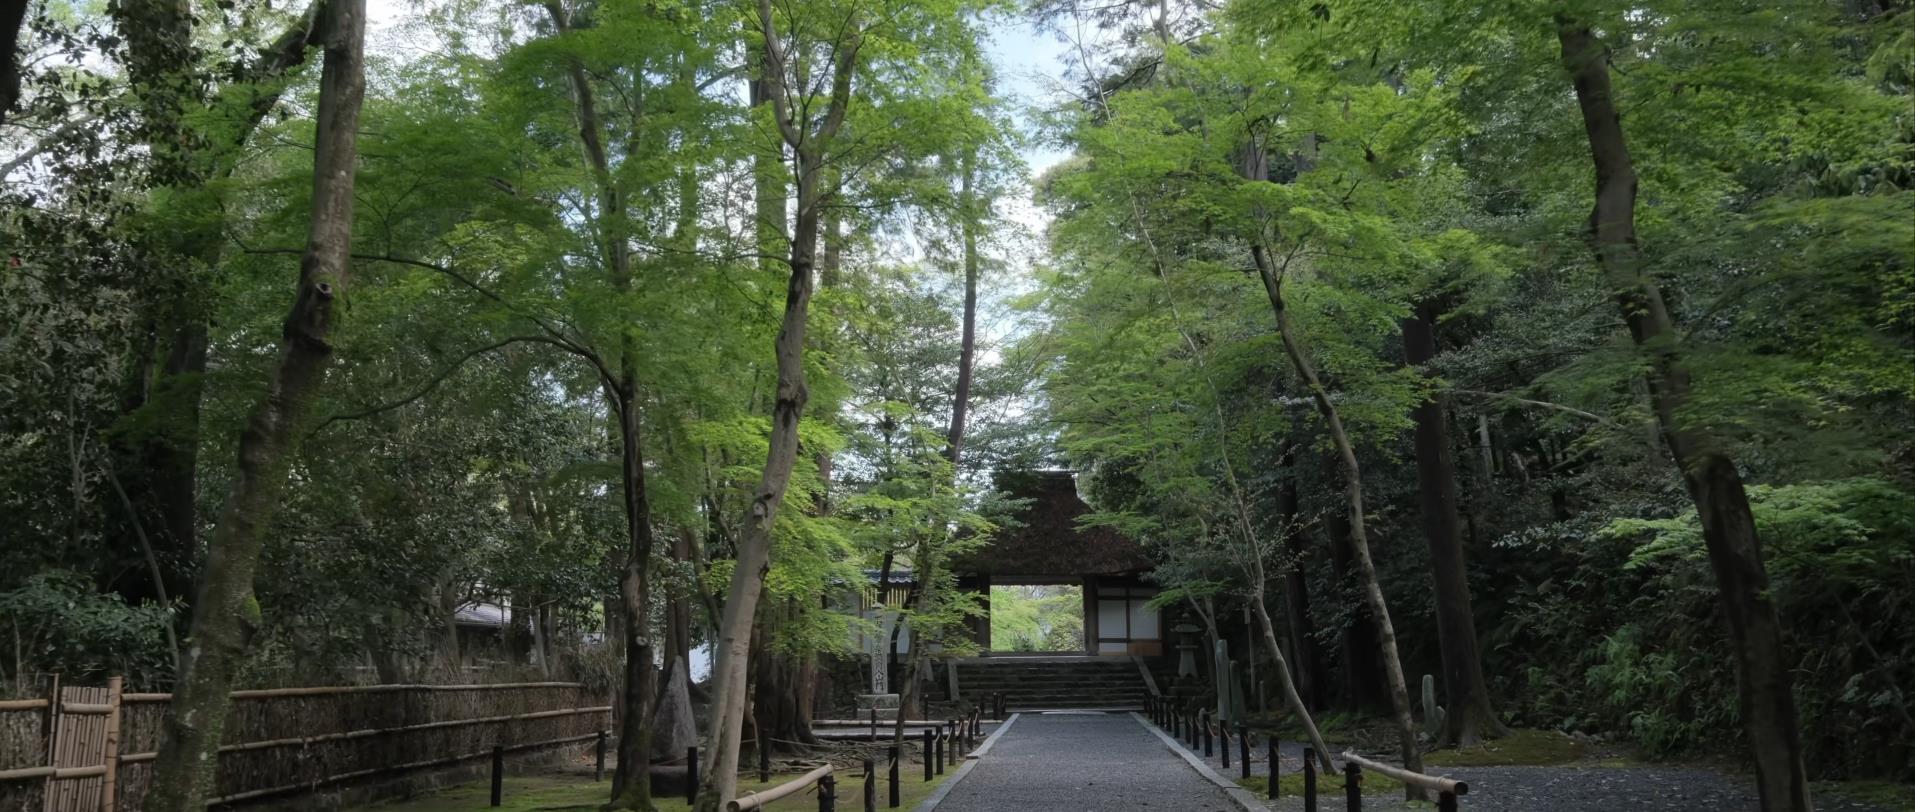 Wabi-Sabi-侘寂庭院,侘寂庭院,京都,侘寂设计,侘寂视频下载,日式侘寂庭院